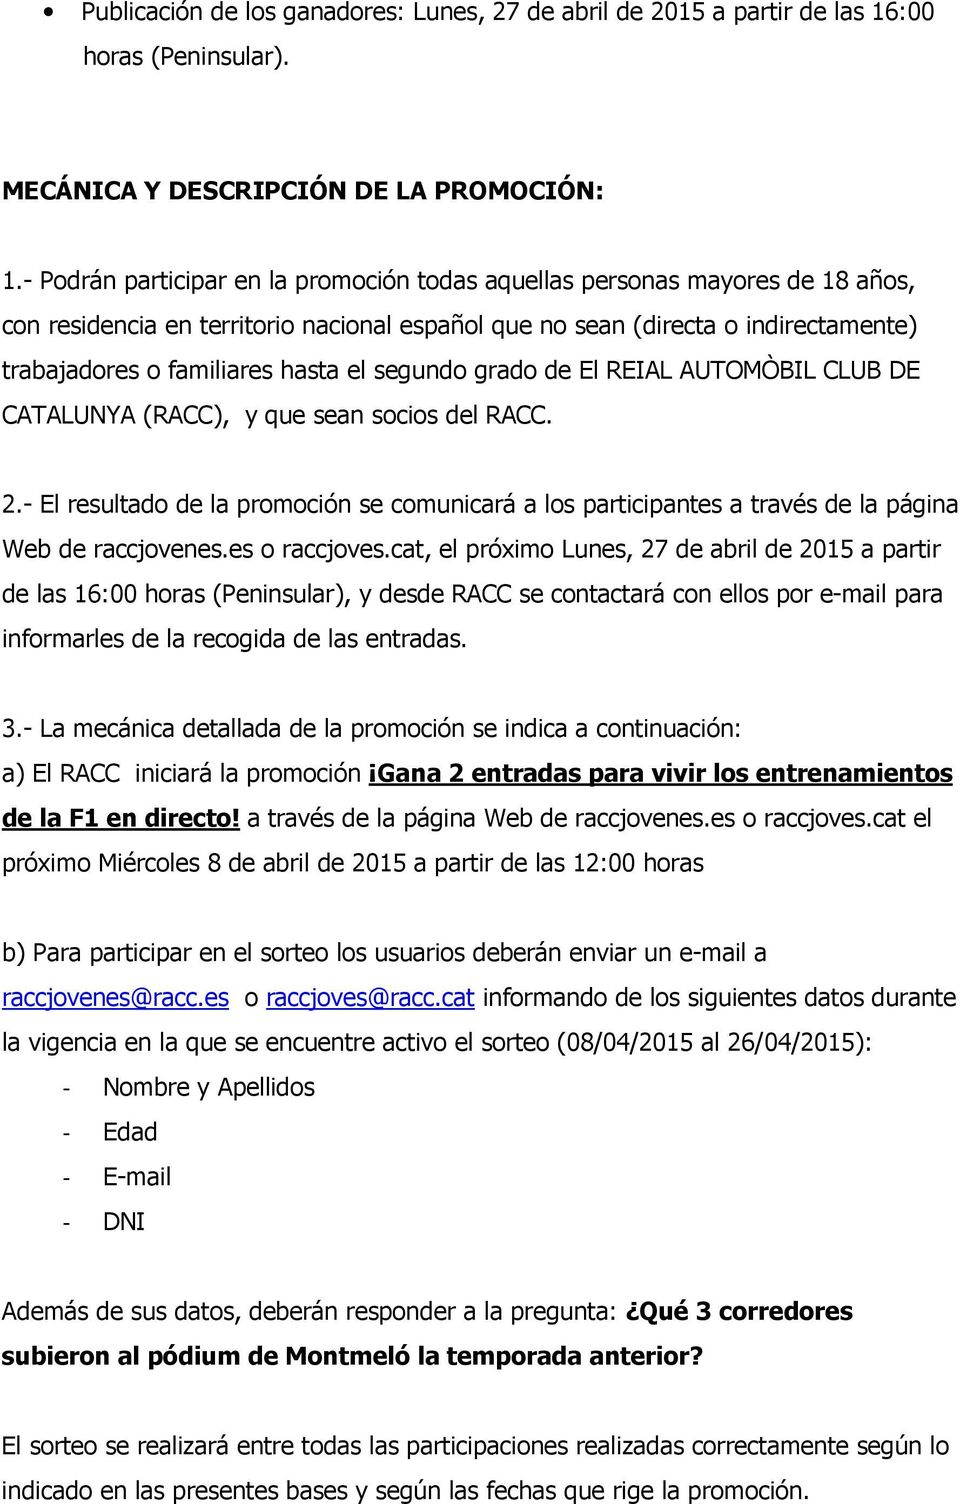 segundo grado de El REIAL AUTOMÒBIL CLUB DE CATALUNYA (RACC), y que sean socios del RACC. 2.- El resultado de la promoción se comunicará a los participantes a través de la página Web de raccjovenes.